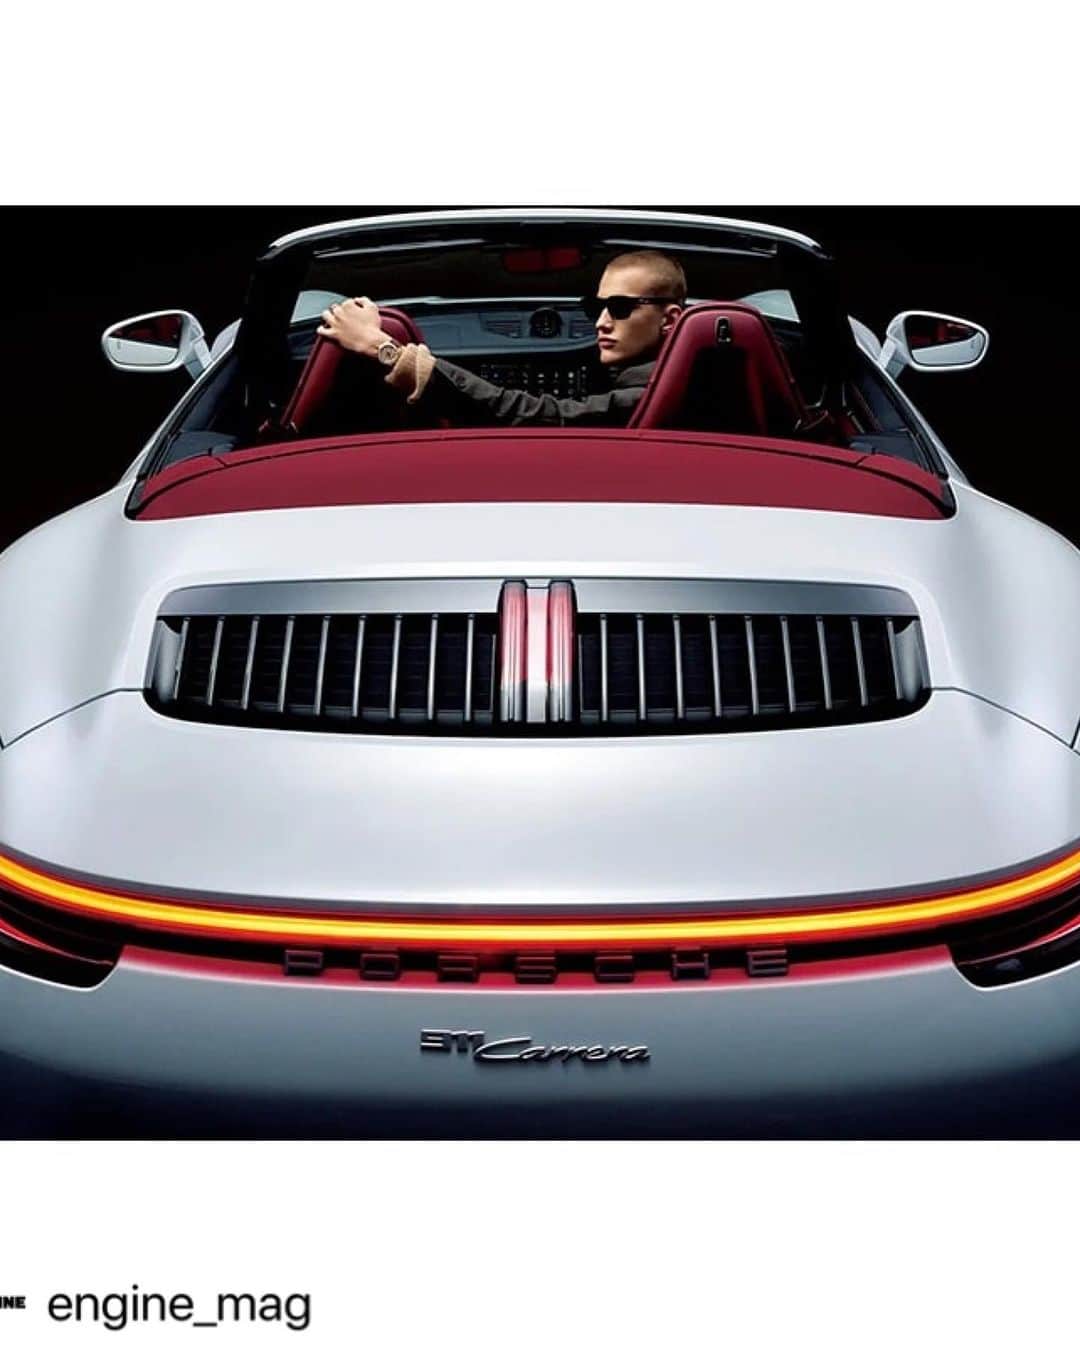 祐真朋樹のインスタグラム：「#Repost @engine_mag with @use.repost ・・・ PORSCHE 911 Carrera Cabriolet × TAG HEUER　スタイリスト・祐真朋樹の「乗る車 × 着る服」  スタイリストの祐真朋樹が、話題のクルマに旬なファッションを提案するシリーズ「乗る車×着る服」。今回のクルマは1963年の登場以来、ポルシェを代表する名車として君臨する911。撮影したのは第8世代（type992）の“カレラ”のオープンモデルだ。そして注目いただきたいのは、モデルの腕に輝く時計。これはポルシェとタグ・ホイヤーによる最新コラボモデル「タグ・ホイヤー カレラ クロノスプリント × ポルシェ」だ。  #ENGINE_mag #ENGINE_web #ENGINE_PremiumClub #engine #エンジン #porsche  #porsche911  #porsche911cabriolet  #911  #911cabriolet #carrera #tagheuer #tagheuercarrerachronosprint  #ポルシェ #ポルシェ911 #ポルシェ911カブリオレ #911カブリオレ #タグホイヤー #タグホイヤーカレラ  #ENGINE11月号 #乗る車 × #着る服 #992 #992cabriolet」